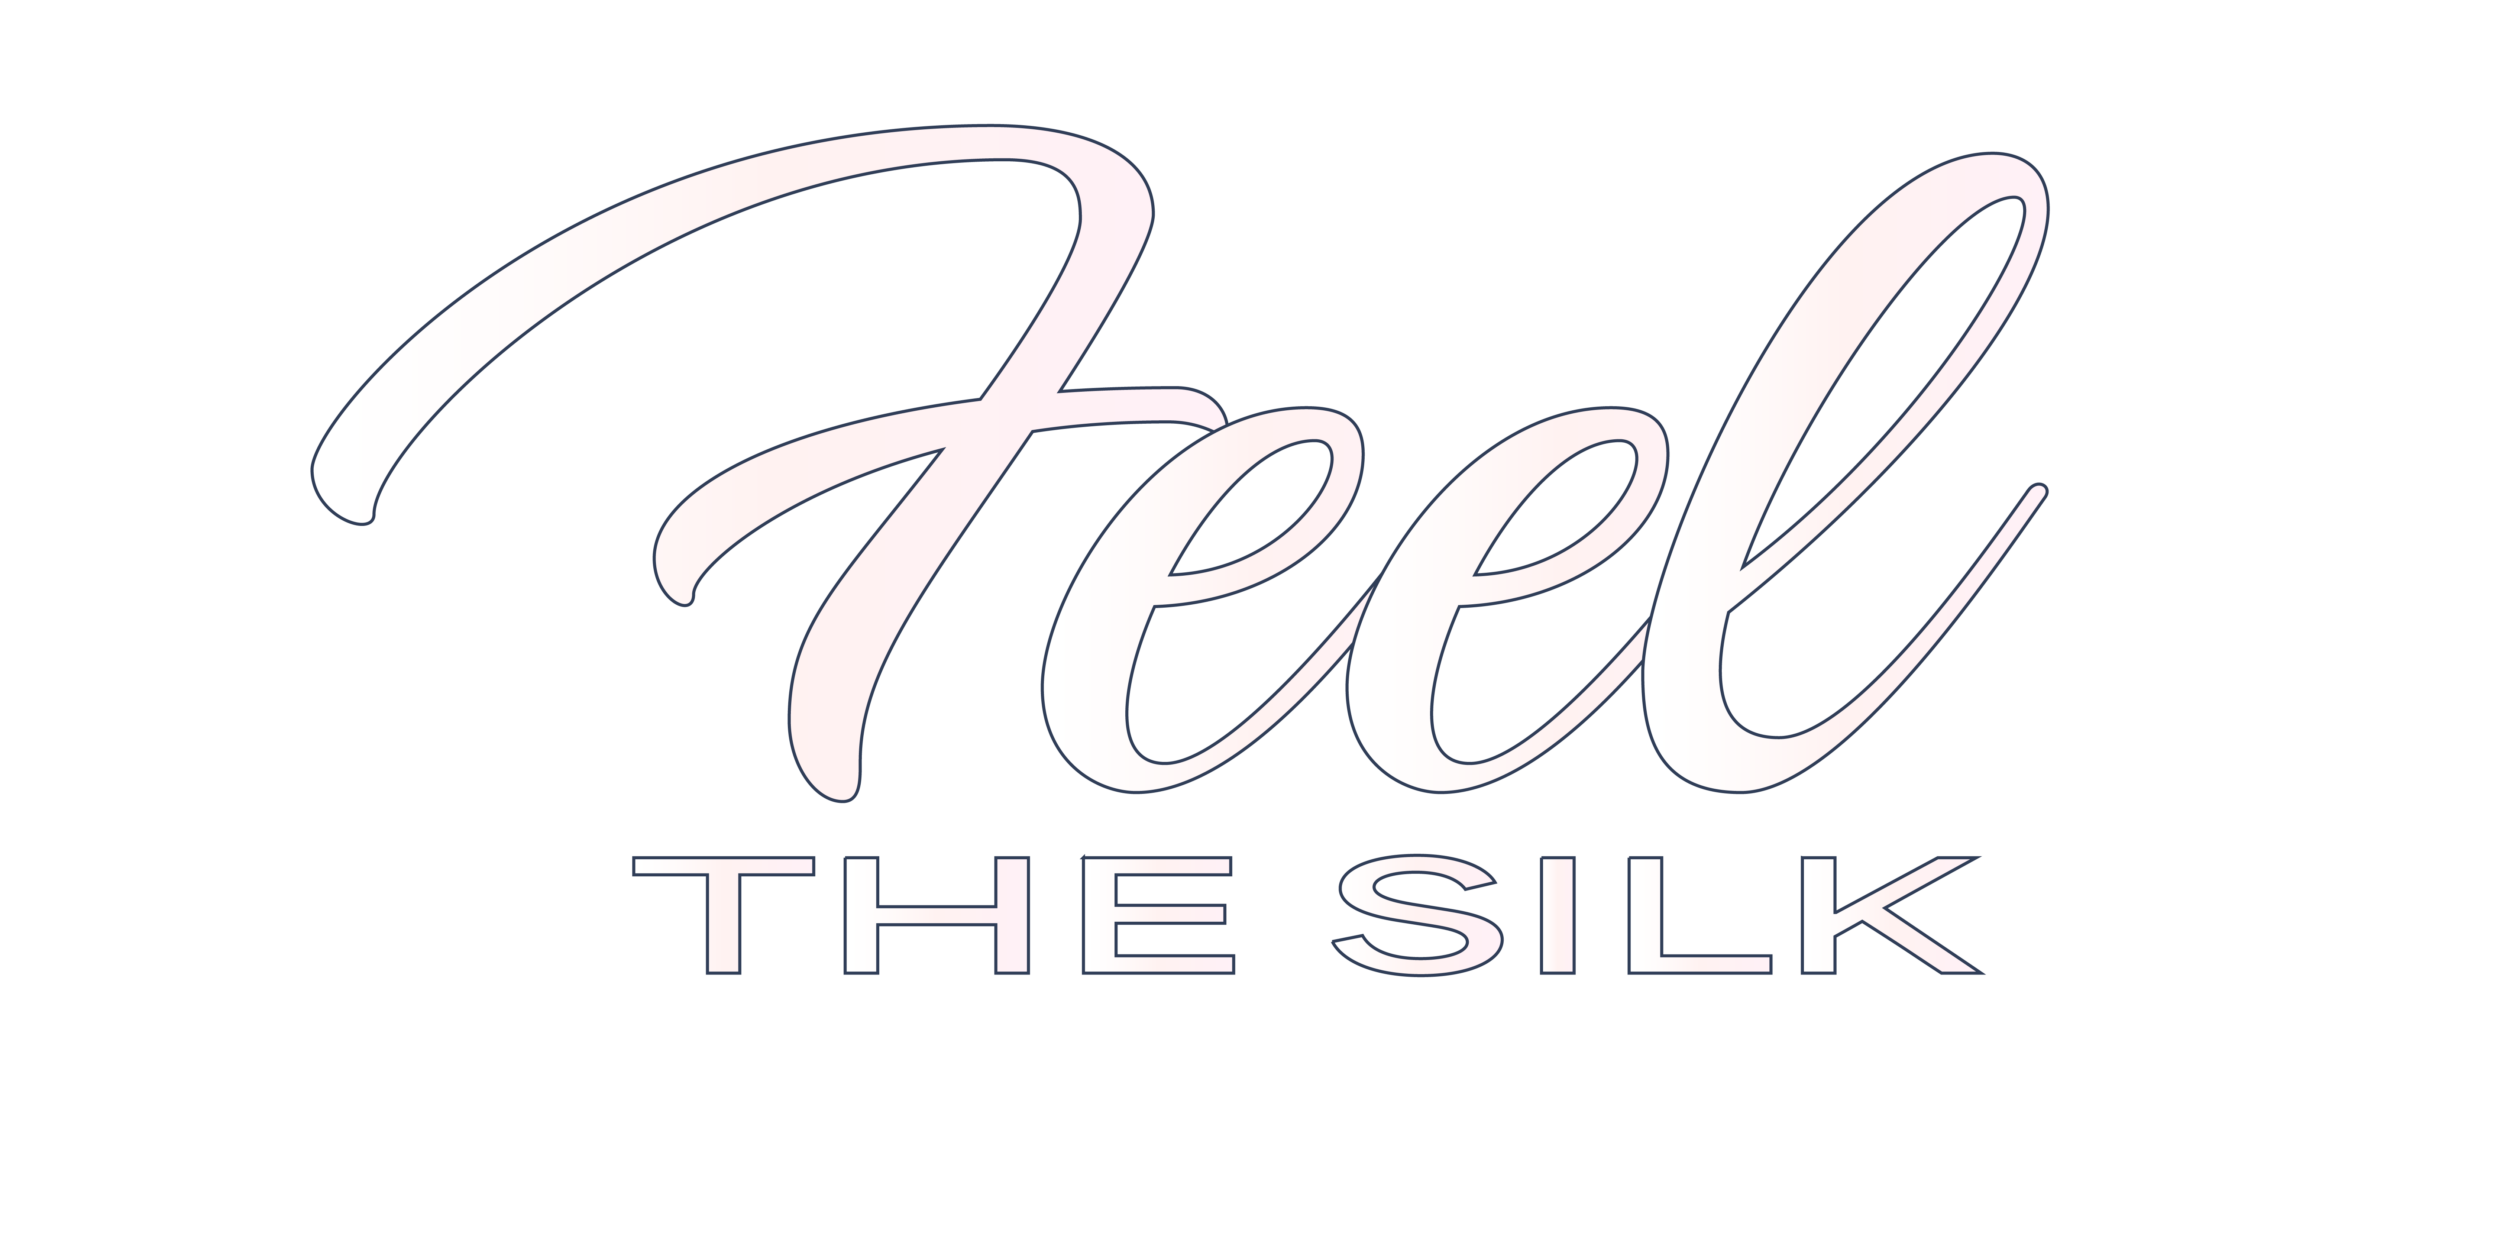 Feel the Silk